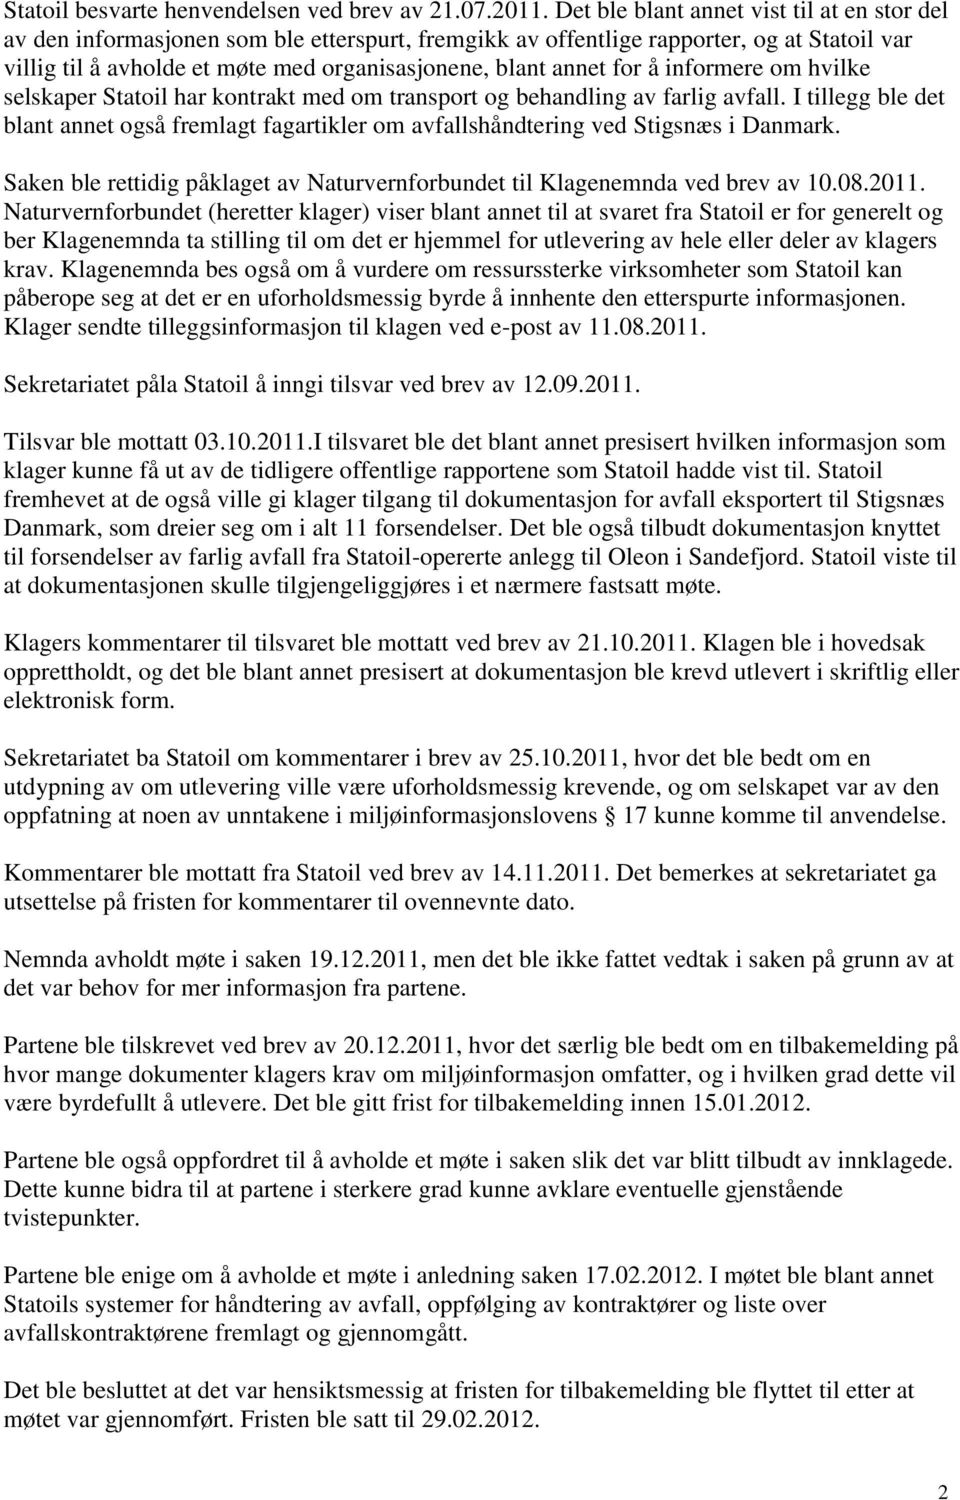 for å informere om hvilke selskaper Statoil har kontrakt med om transport og behandling av farlig avfall.